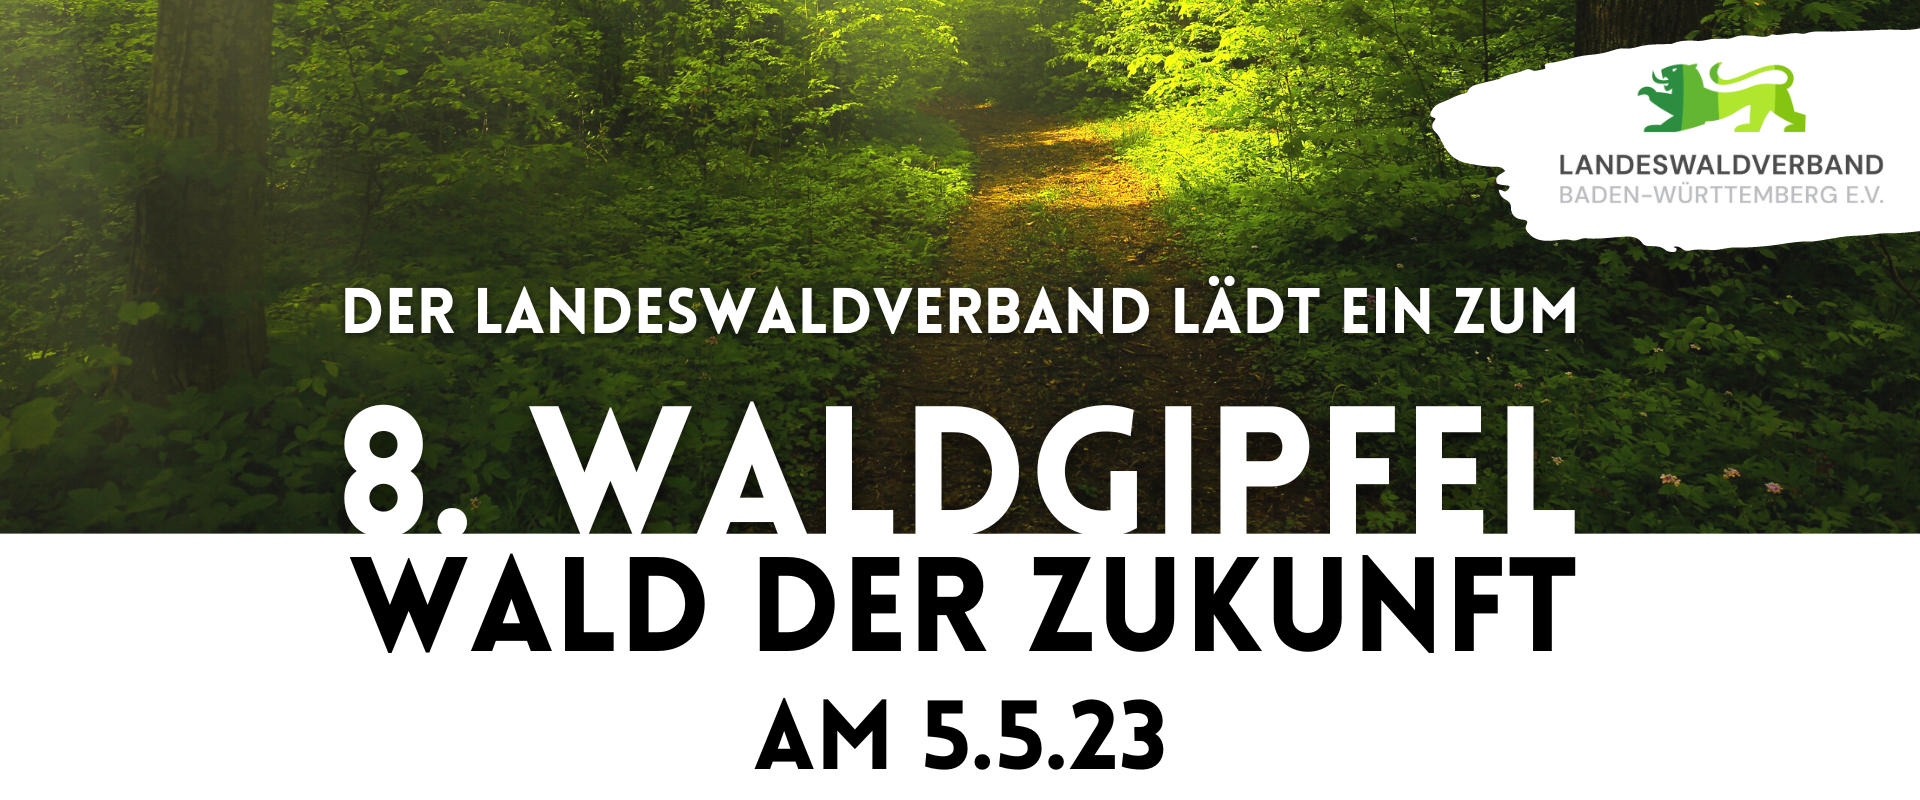 8. Waldgipfel Landeswaldverband Wald der Zukunft Stuttgart